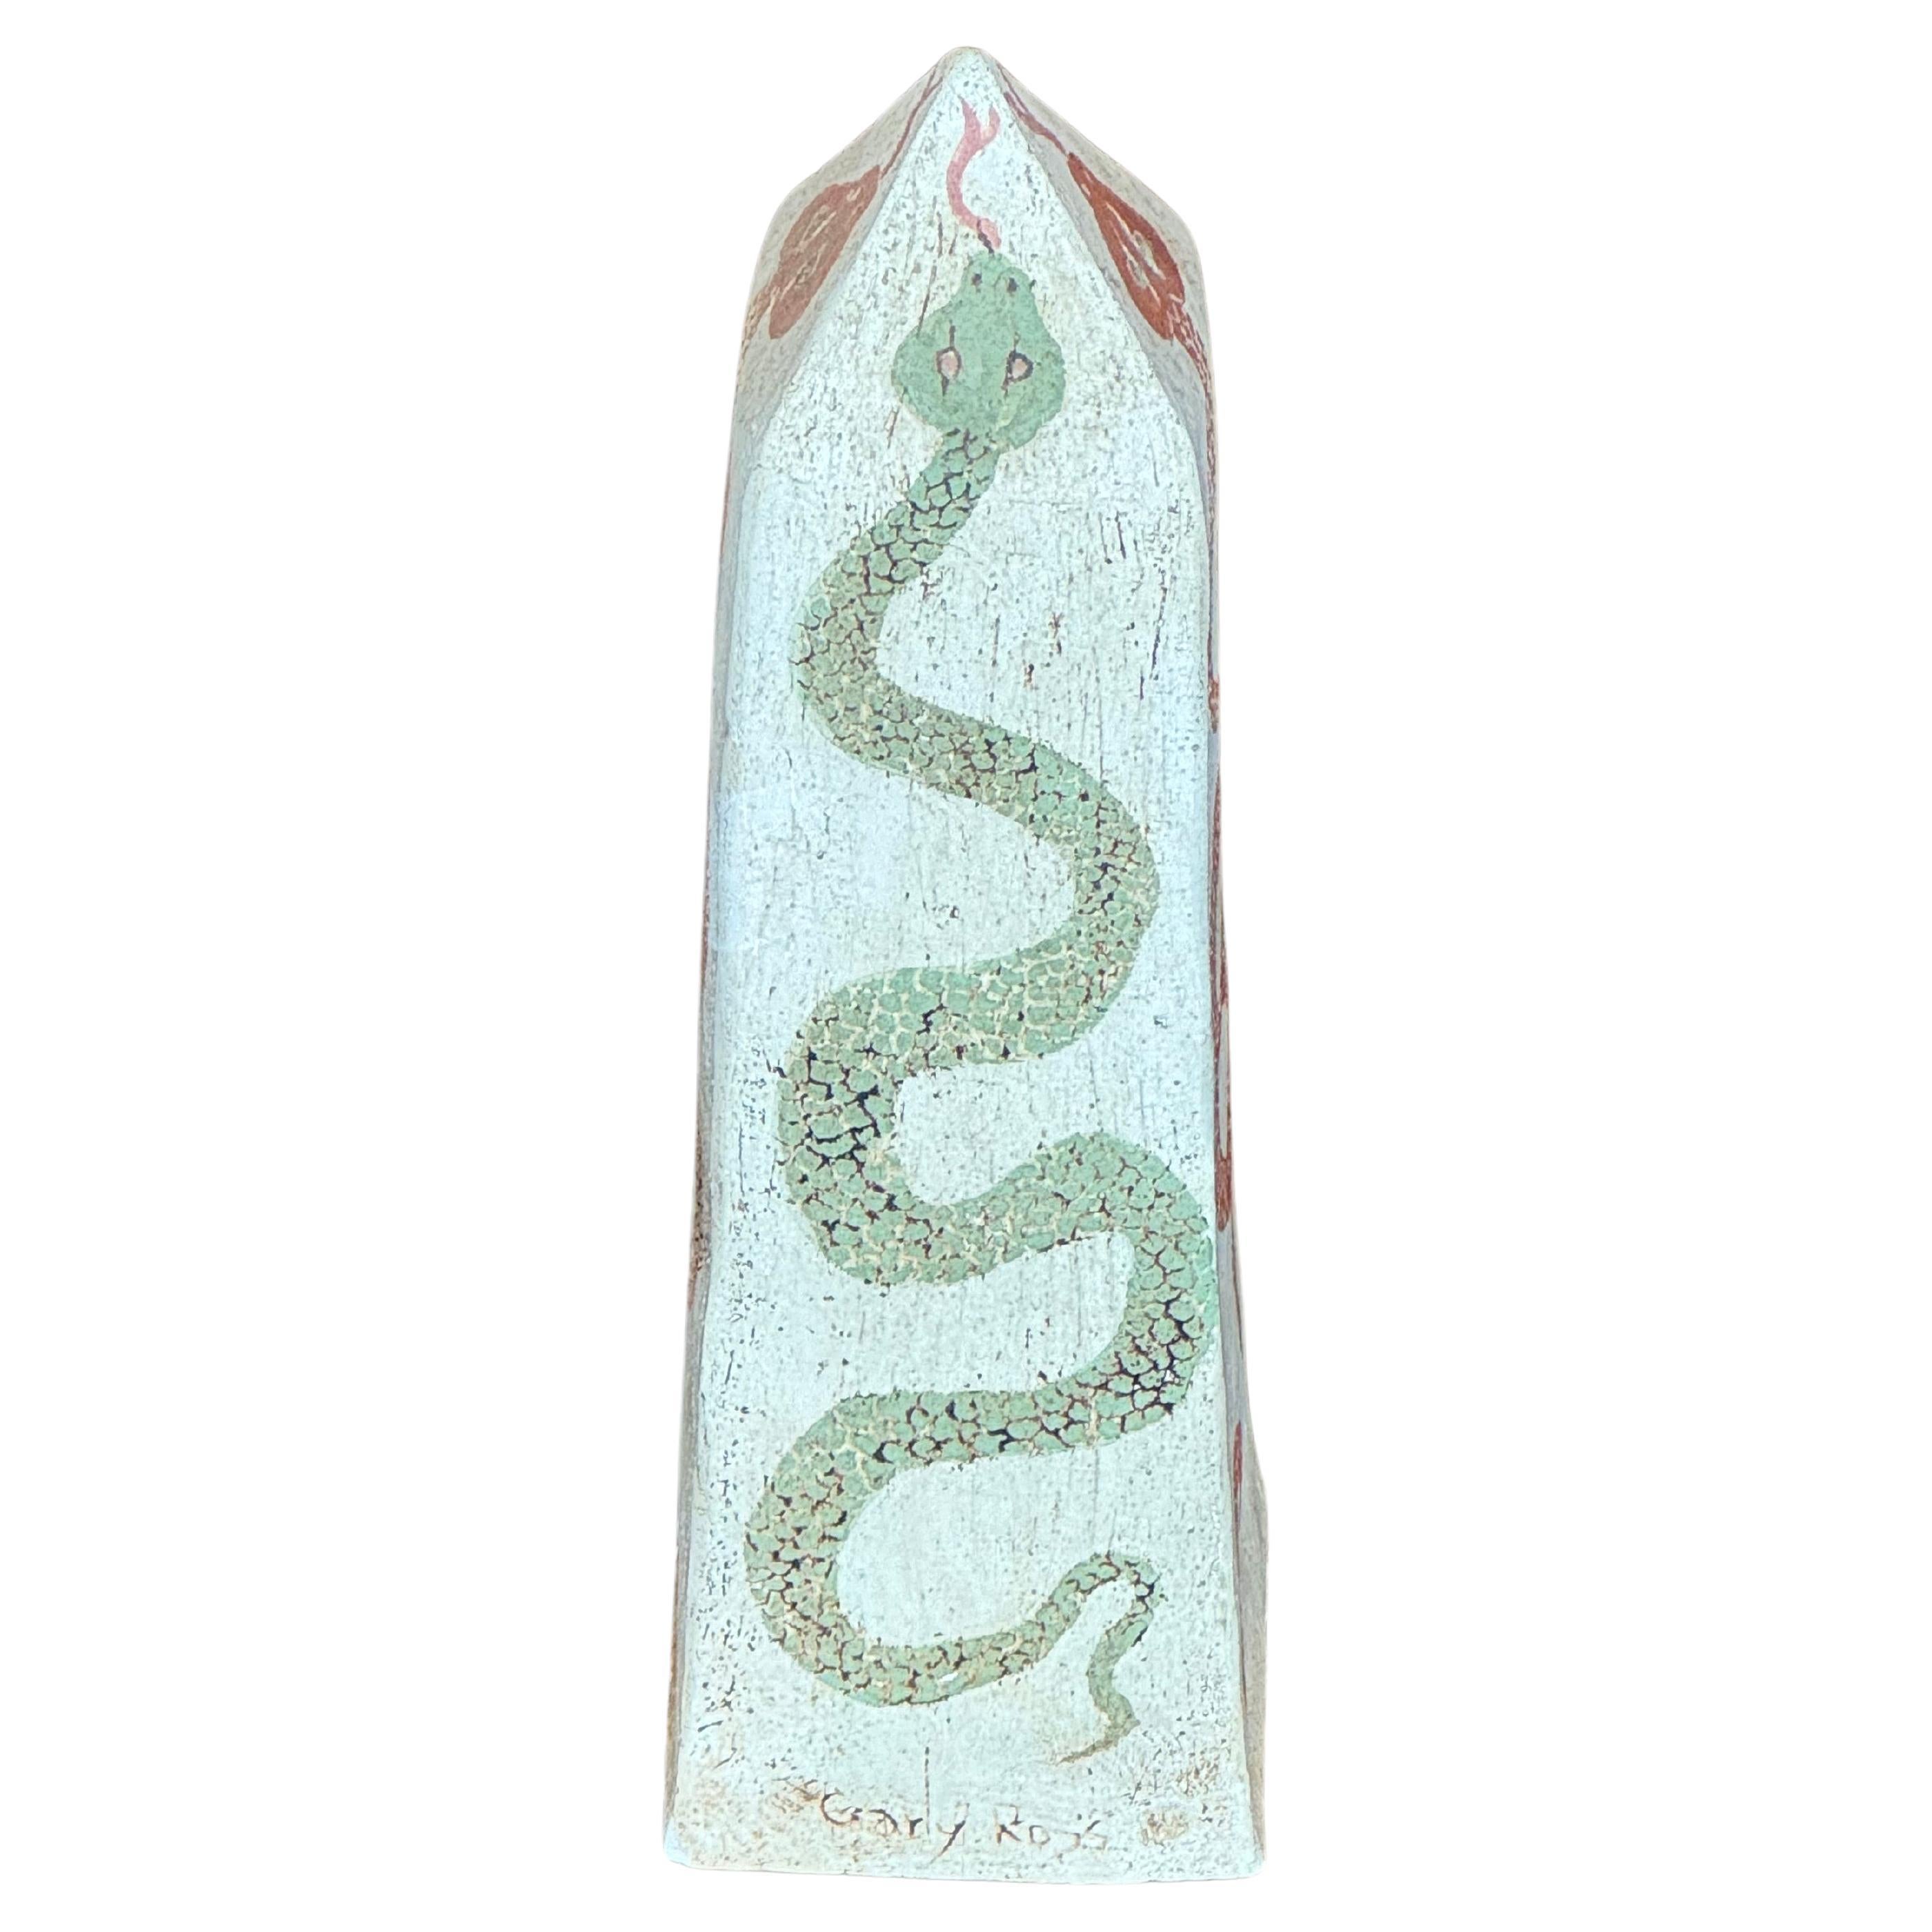 Cet obélisque serpent tricolore en céramique solide du milieu du siècle est orné de serpents captivants peints à la main, symbolisant les thèmes de la vie, de la mort et de la renaissance. Les serpents ont une signification culturelle prépondérante